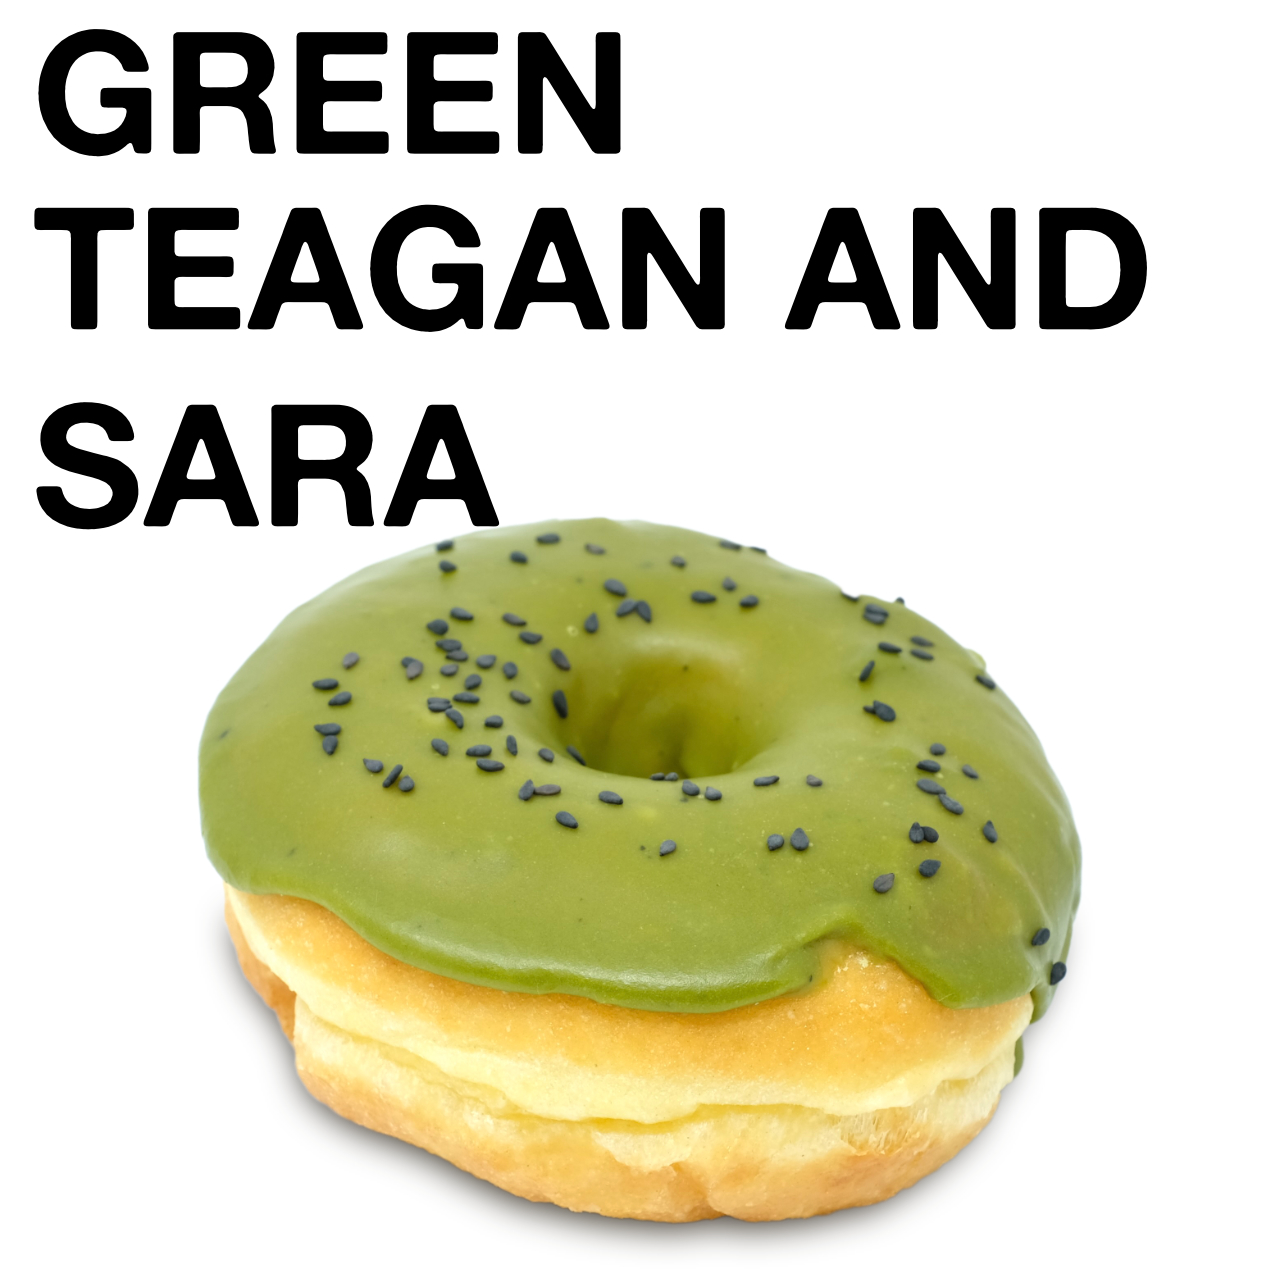 Green Teagan and Sara